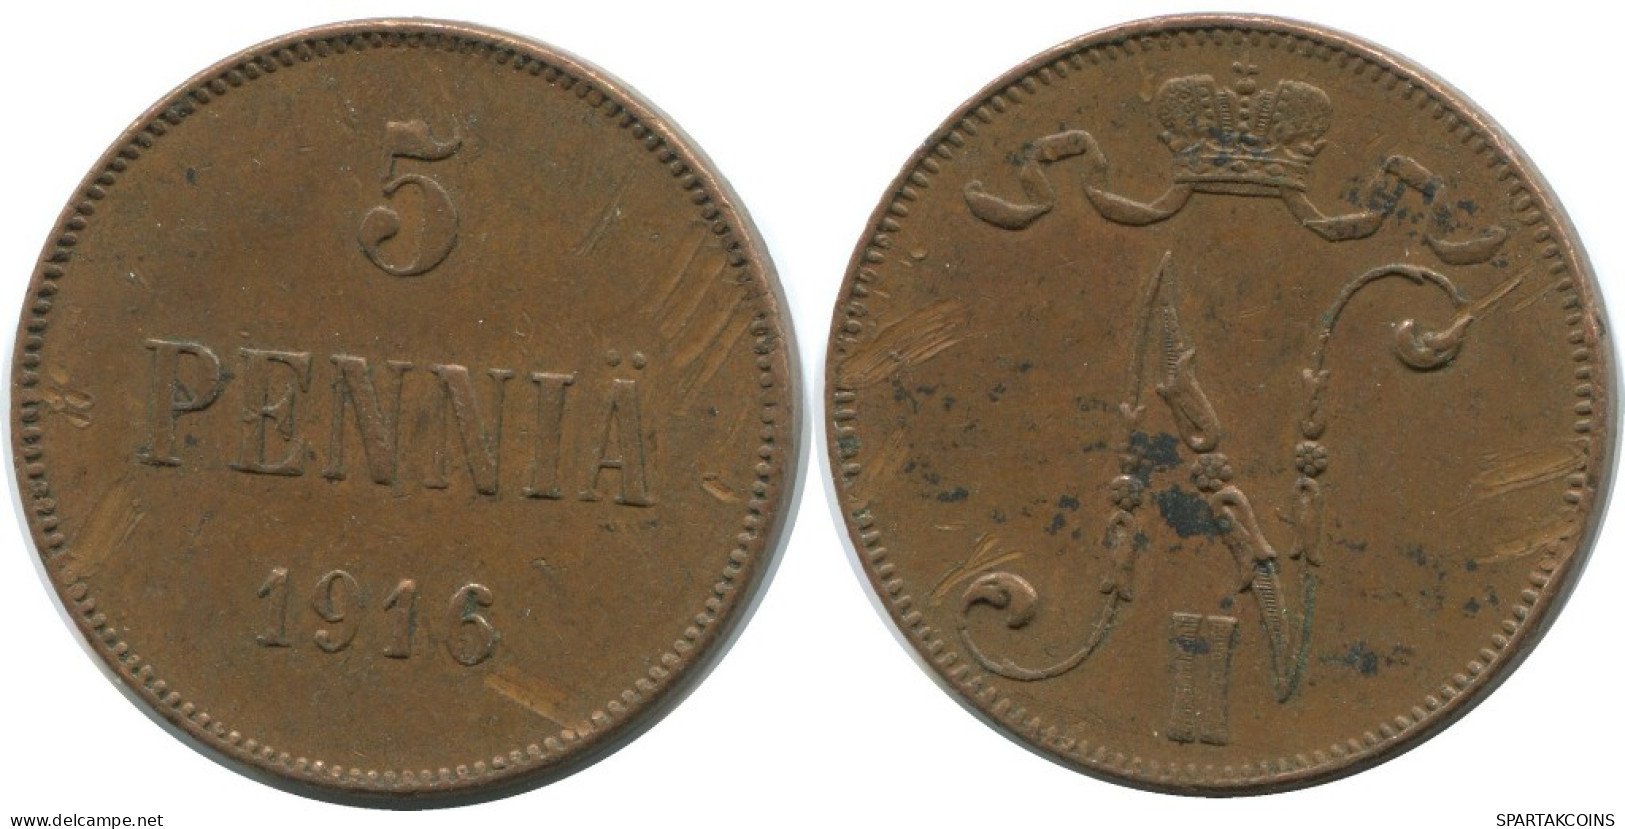 5 PENNIA 1916 FINLAND Coin RUSSIA EMPIRE #AB219.5.U.A - Finlande